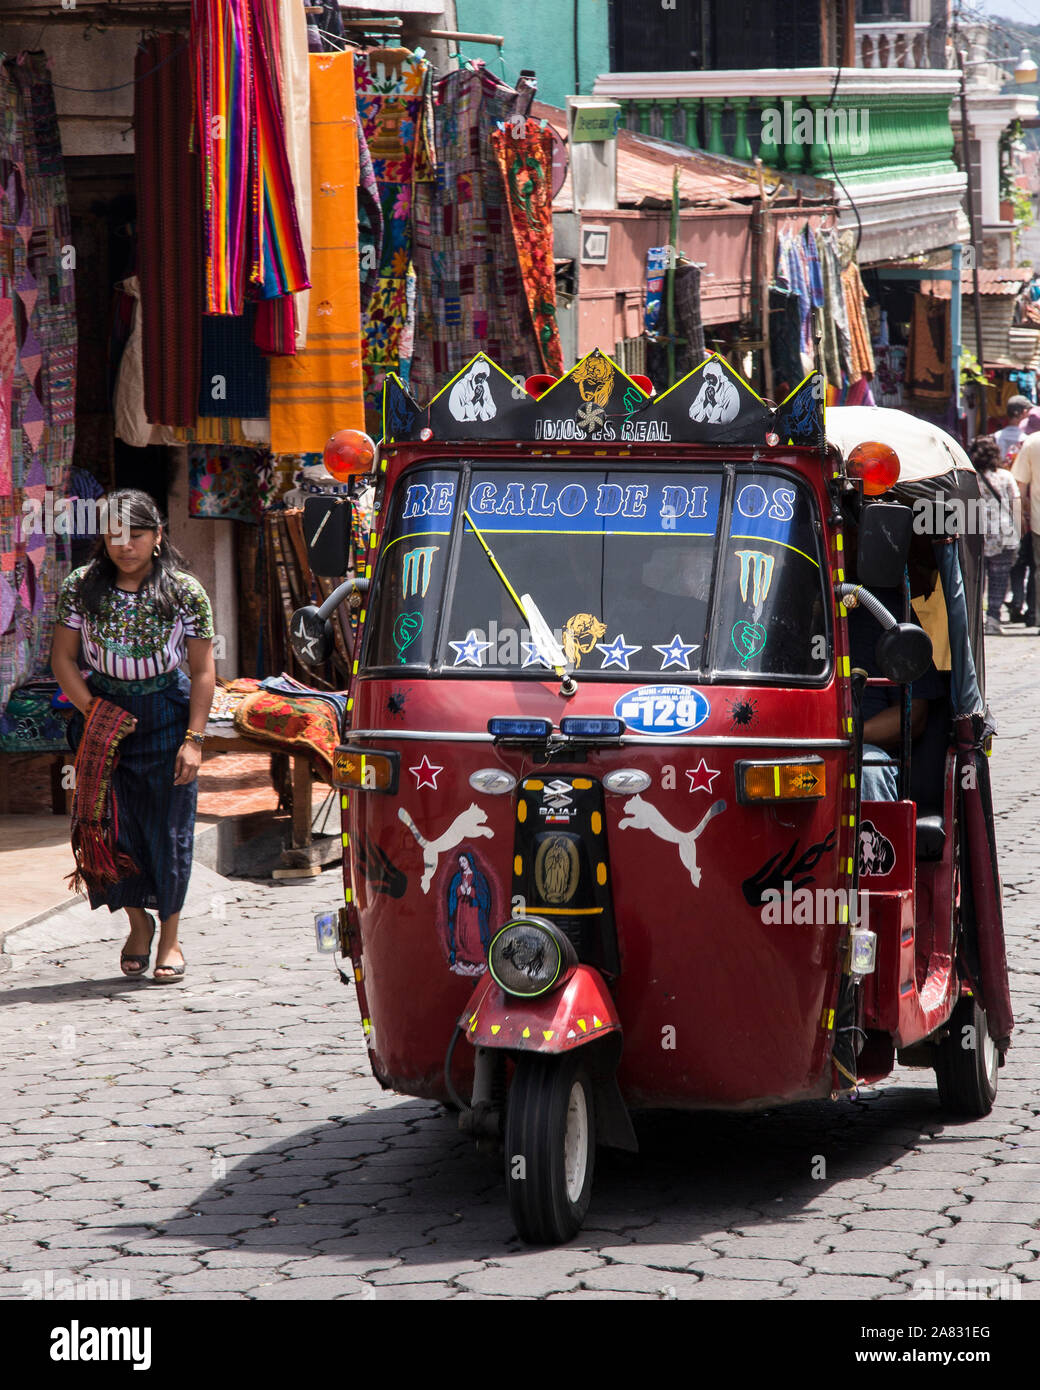 Un Mototaxi Transporte Publico Barato En Una Calle De Adoquines